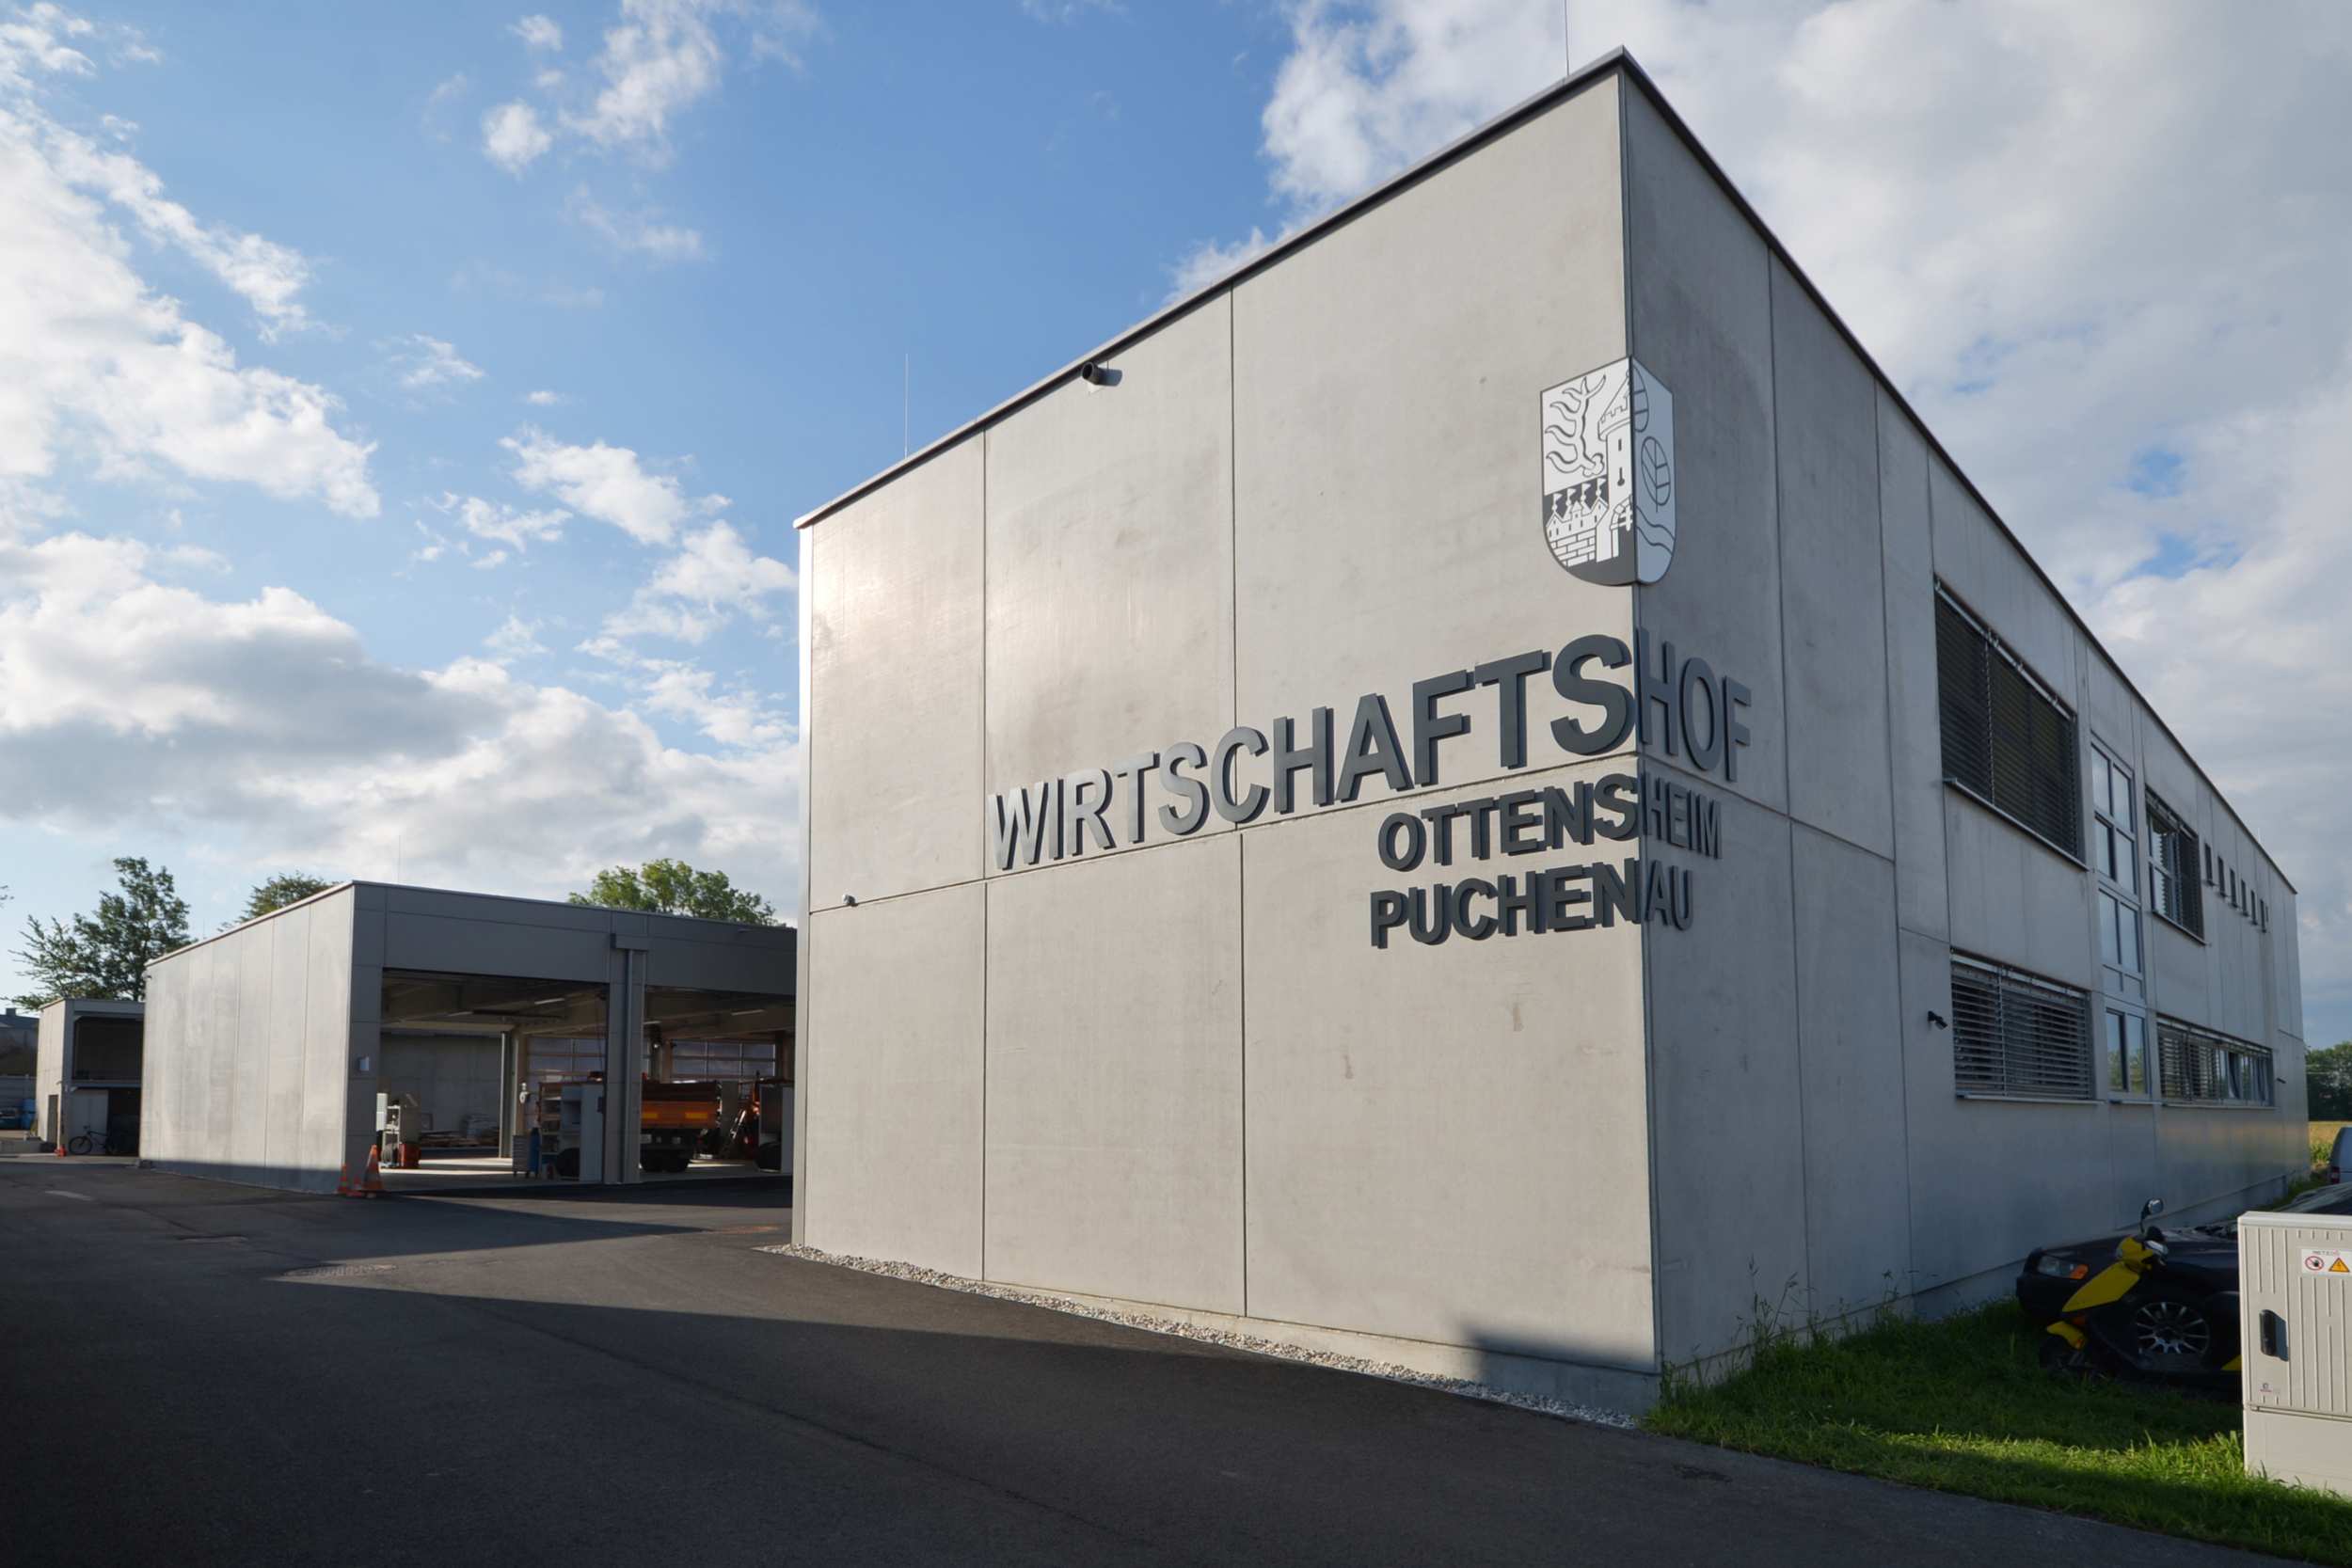 Wirtschaftshof Ottensheim-Puchenau